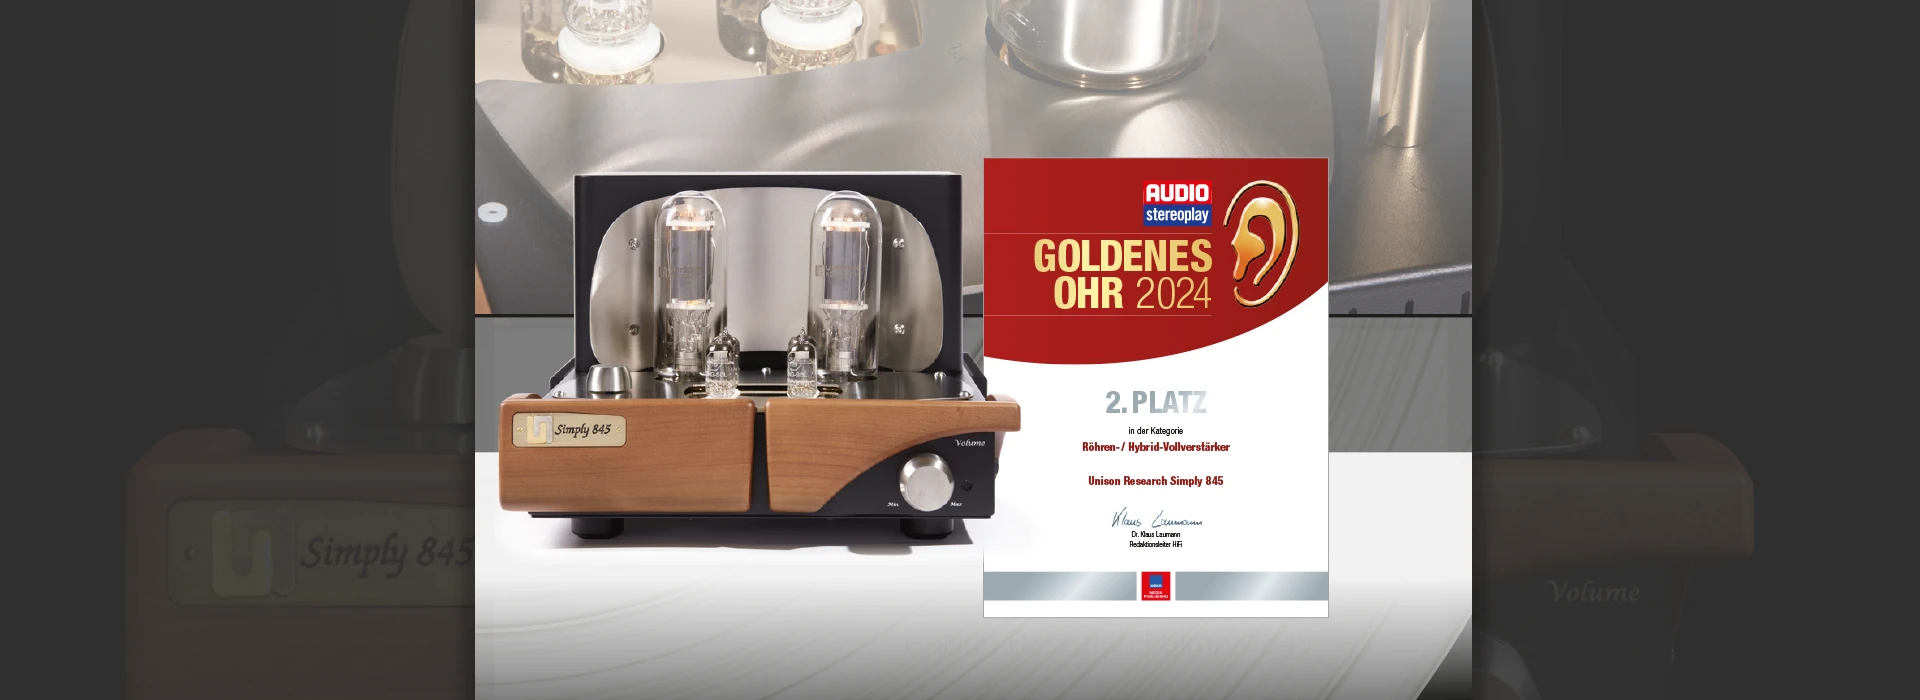 Goldenes Ohr 2024 | Auszeichnung für Unison Research Simply 845